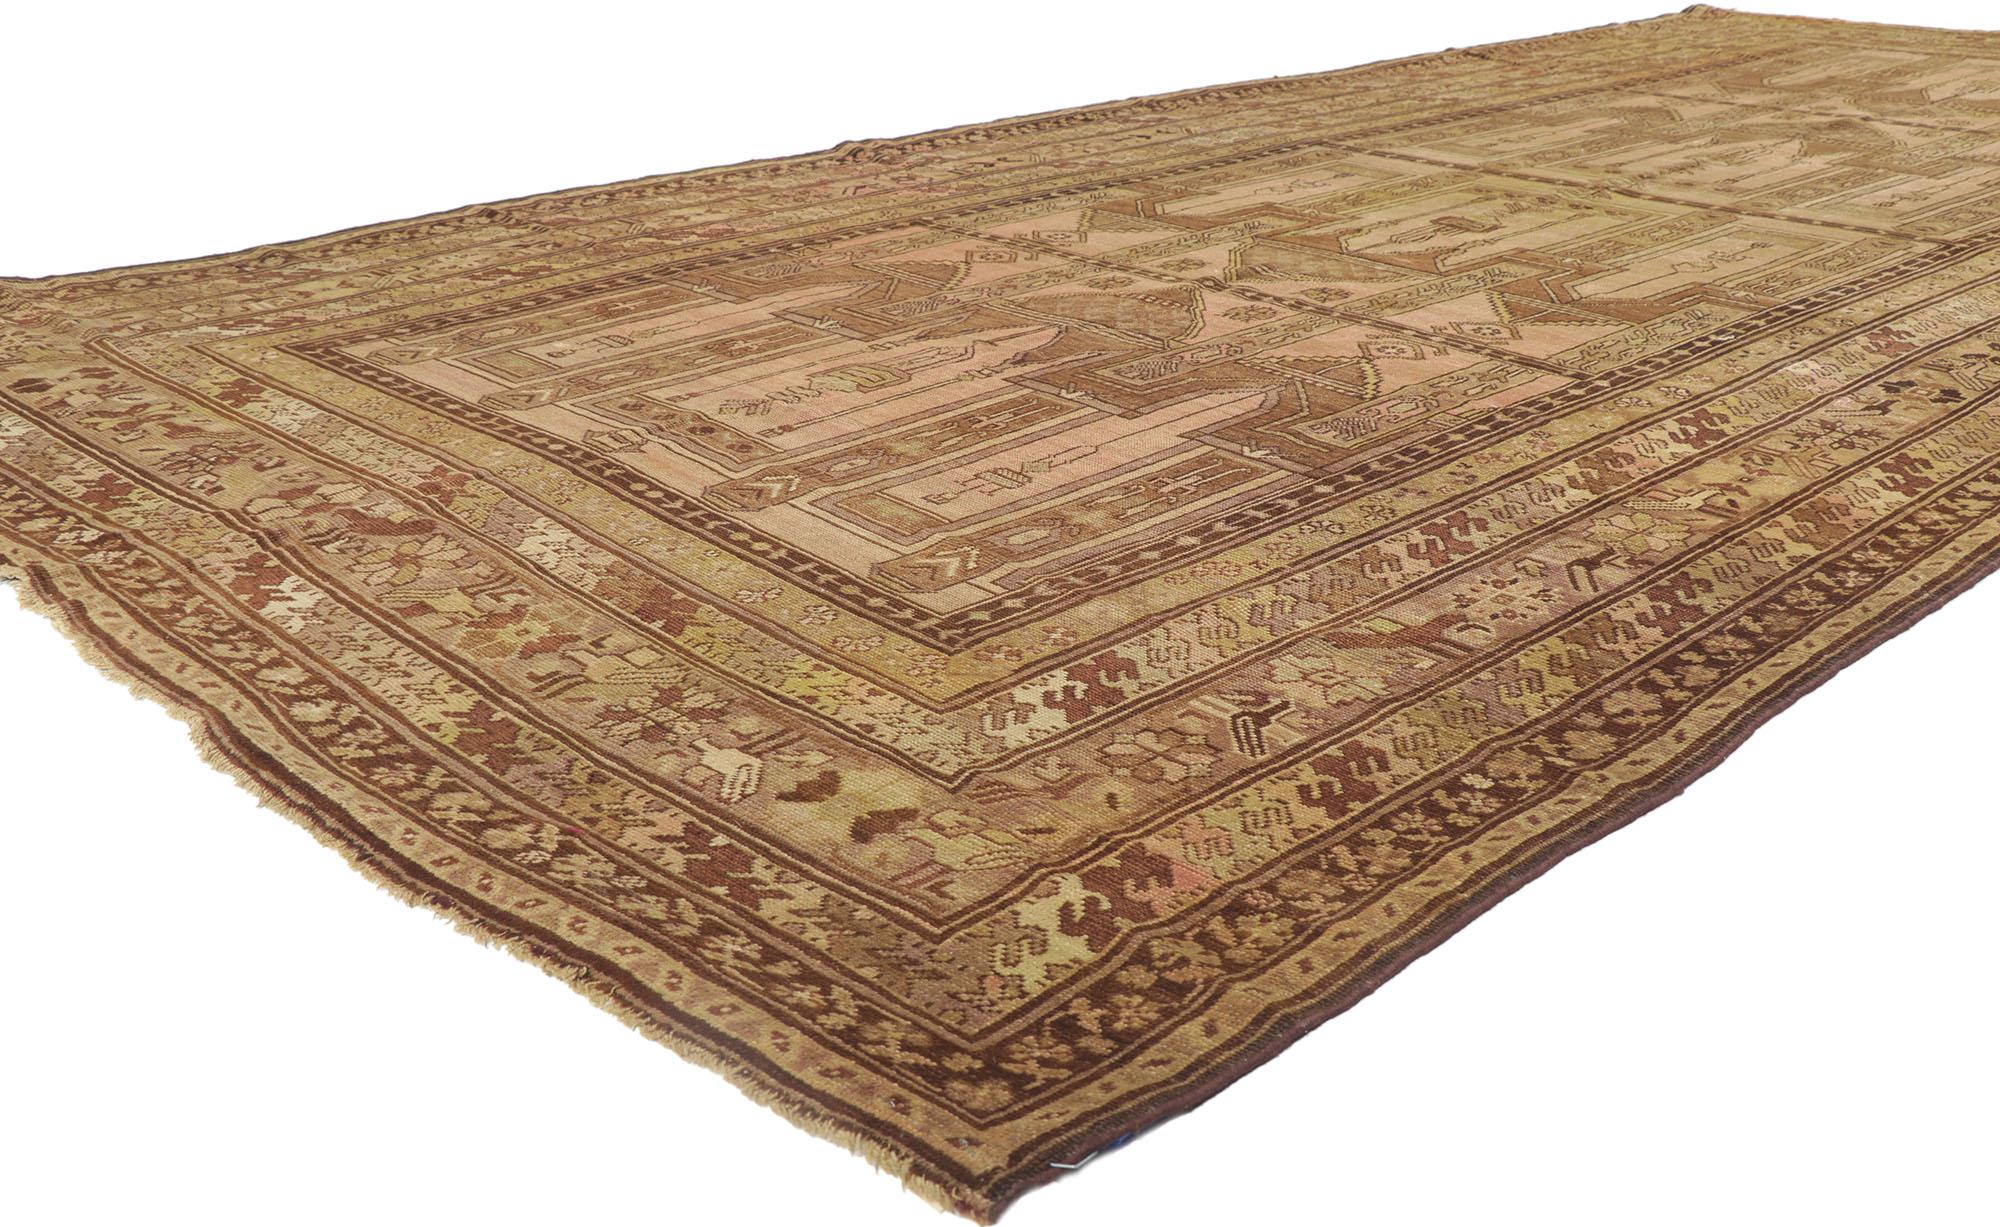 78188 Antique tapis de prière turc avec plusieurs mihrabs, 06'07 x 14'07.
Chaleureux et accueillant, ce tapis de prière turc ancien noué à la main est une vision captivante de la beauté tissée. La composition comporte plusieurs mihrabs et est